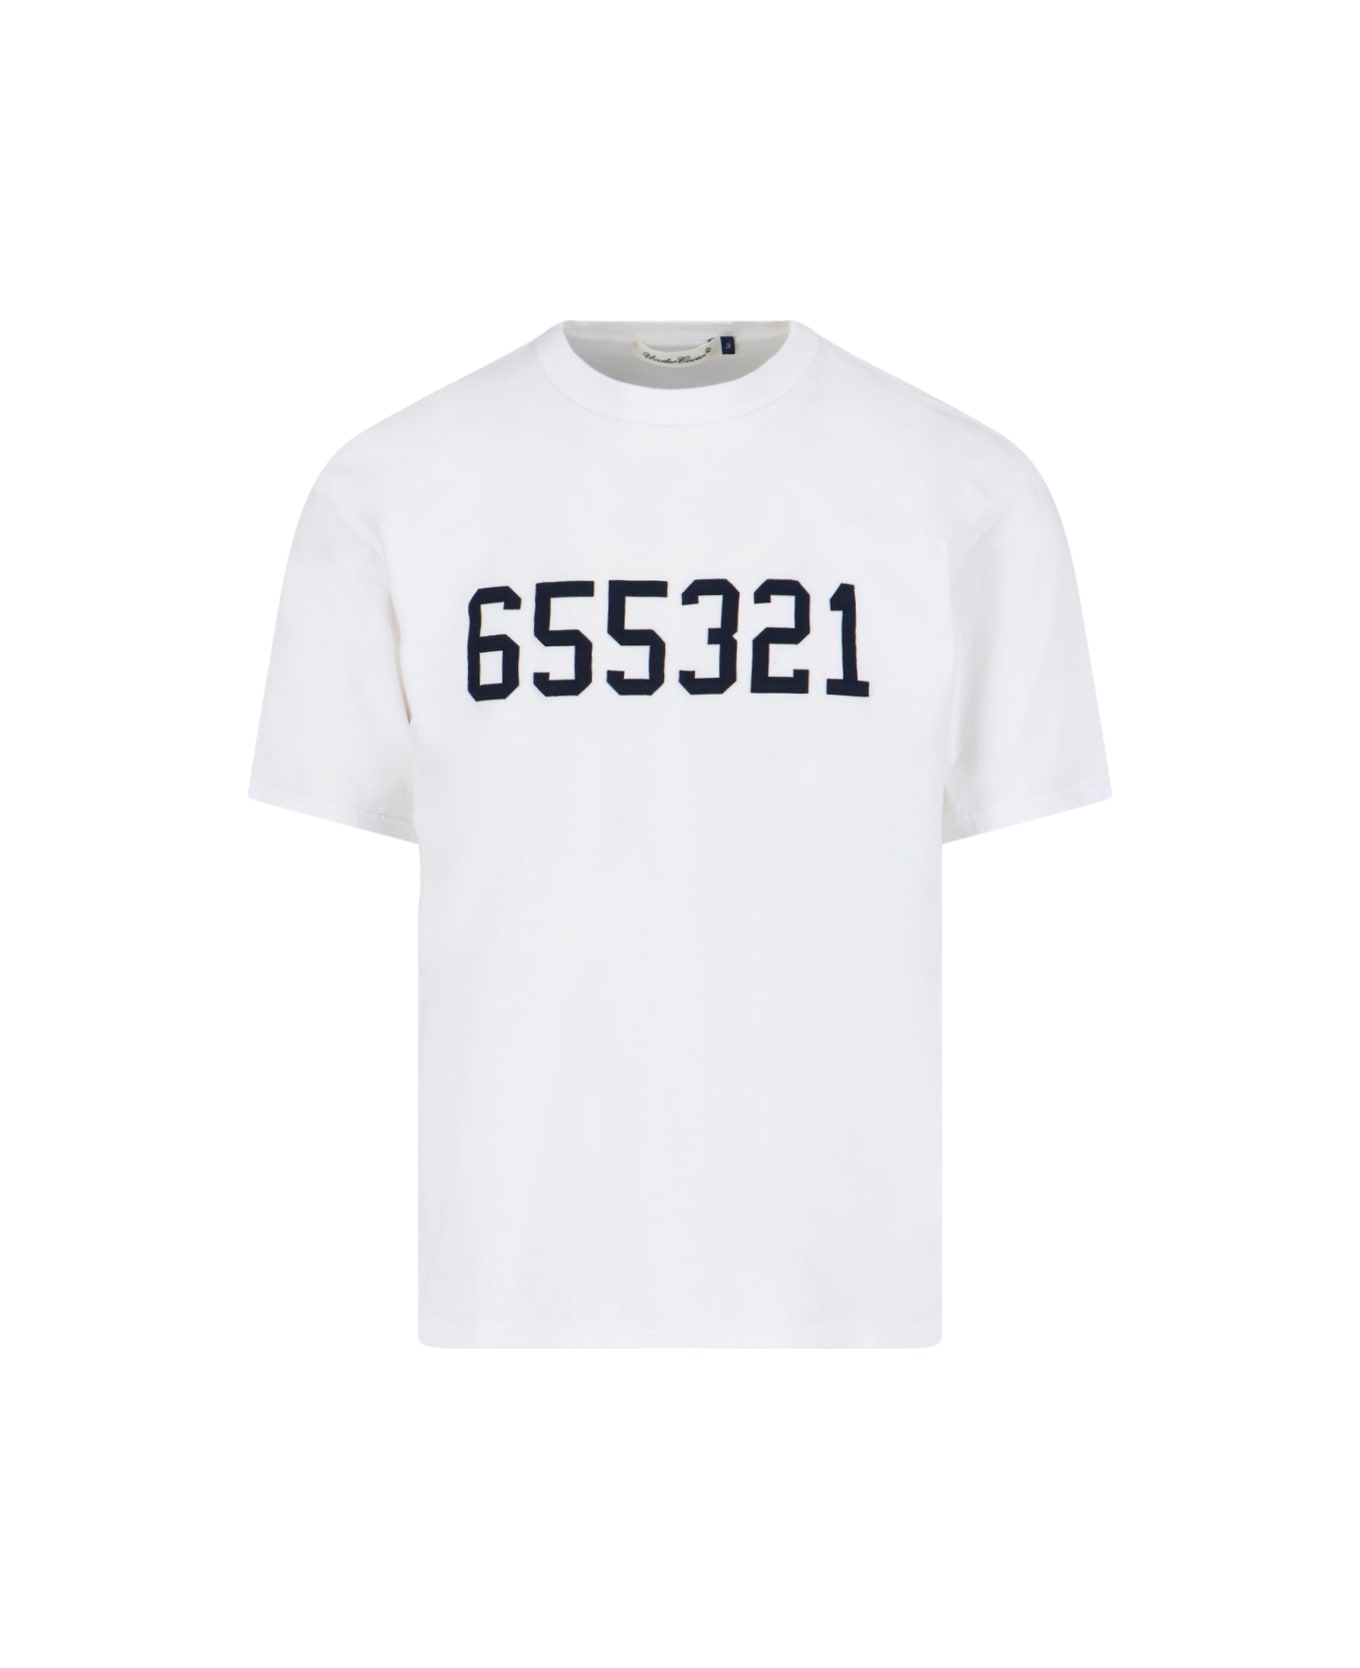 Undercover Jun Takahashi '655321' T-shirt - White